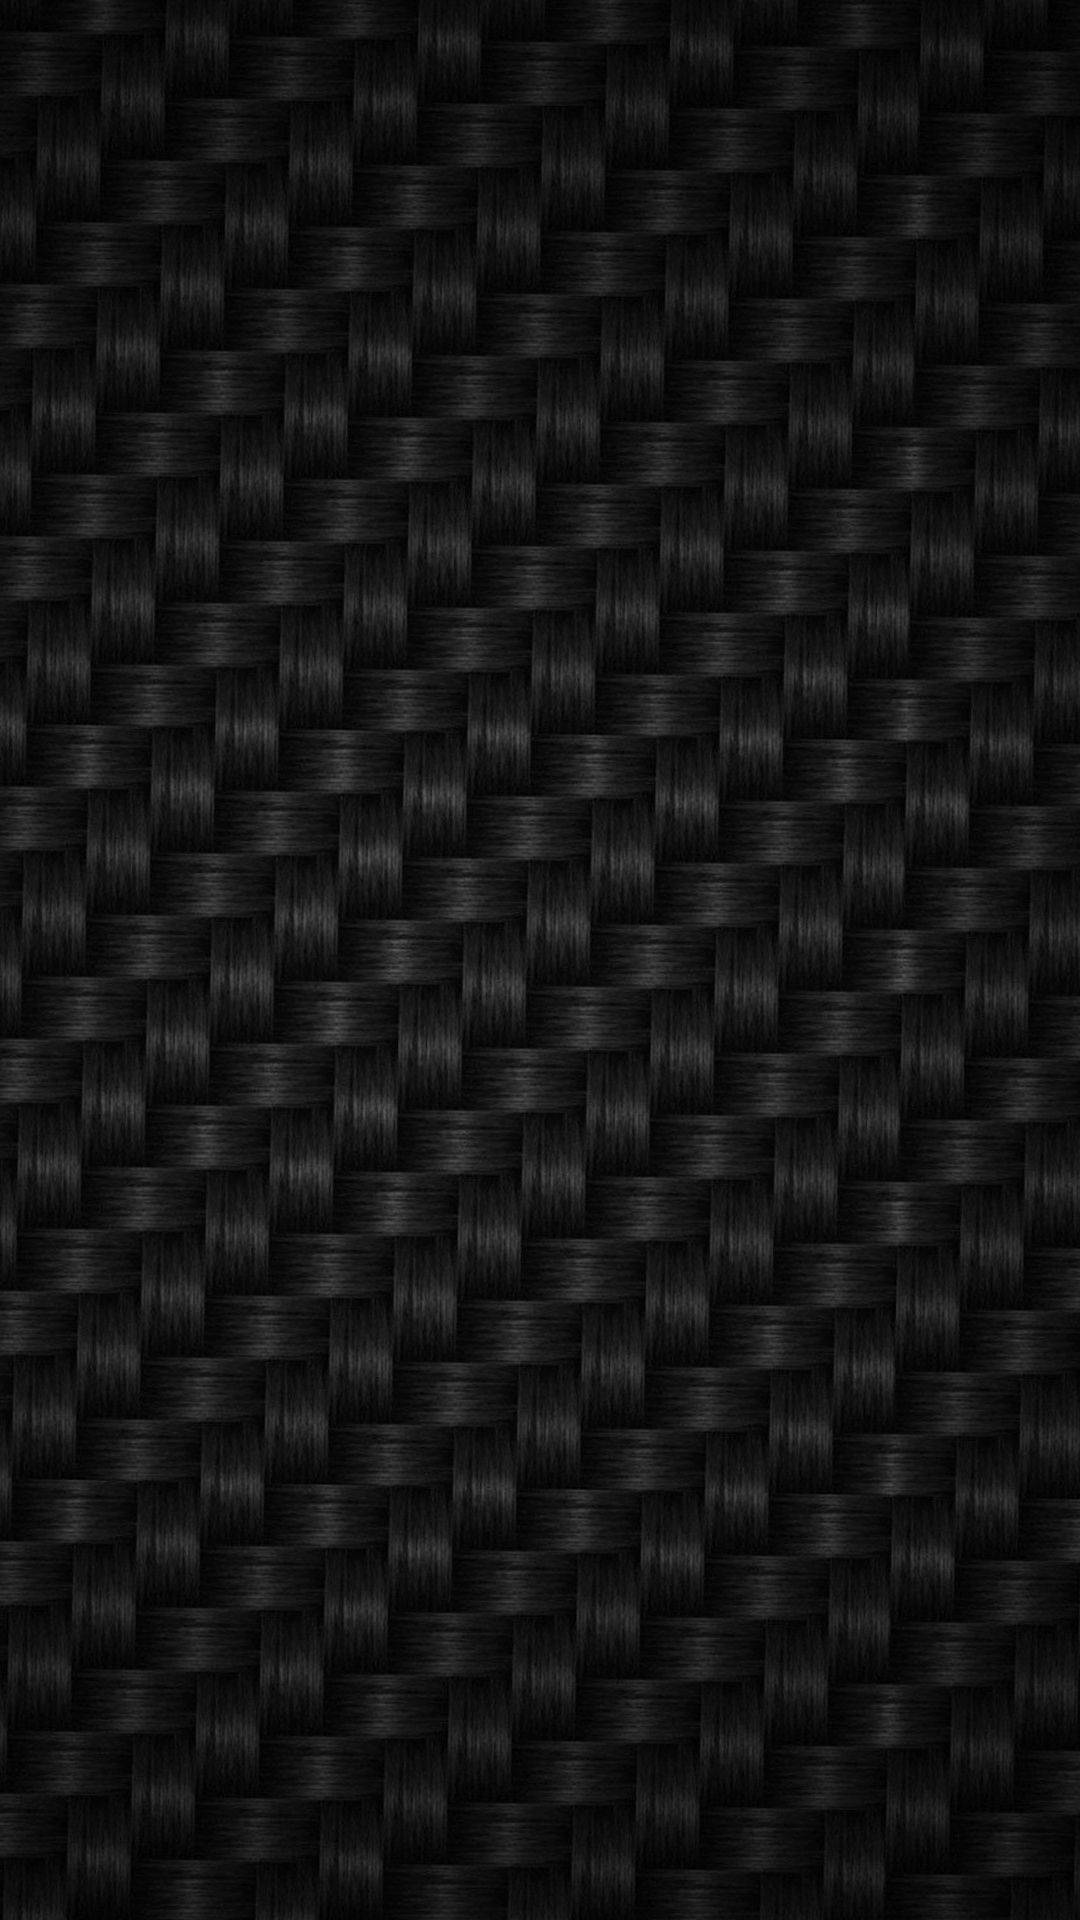 A close-up of criss-crossed carbon fiber Wallpaper